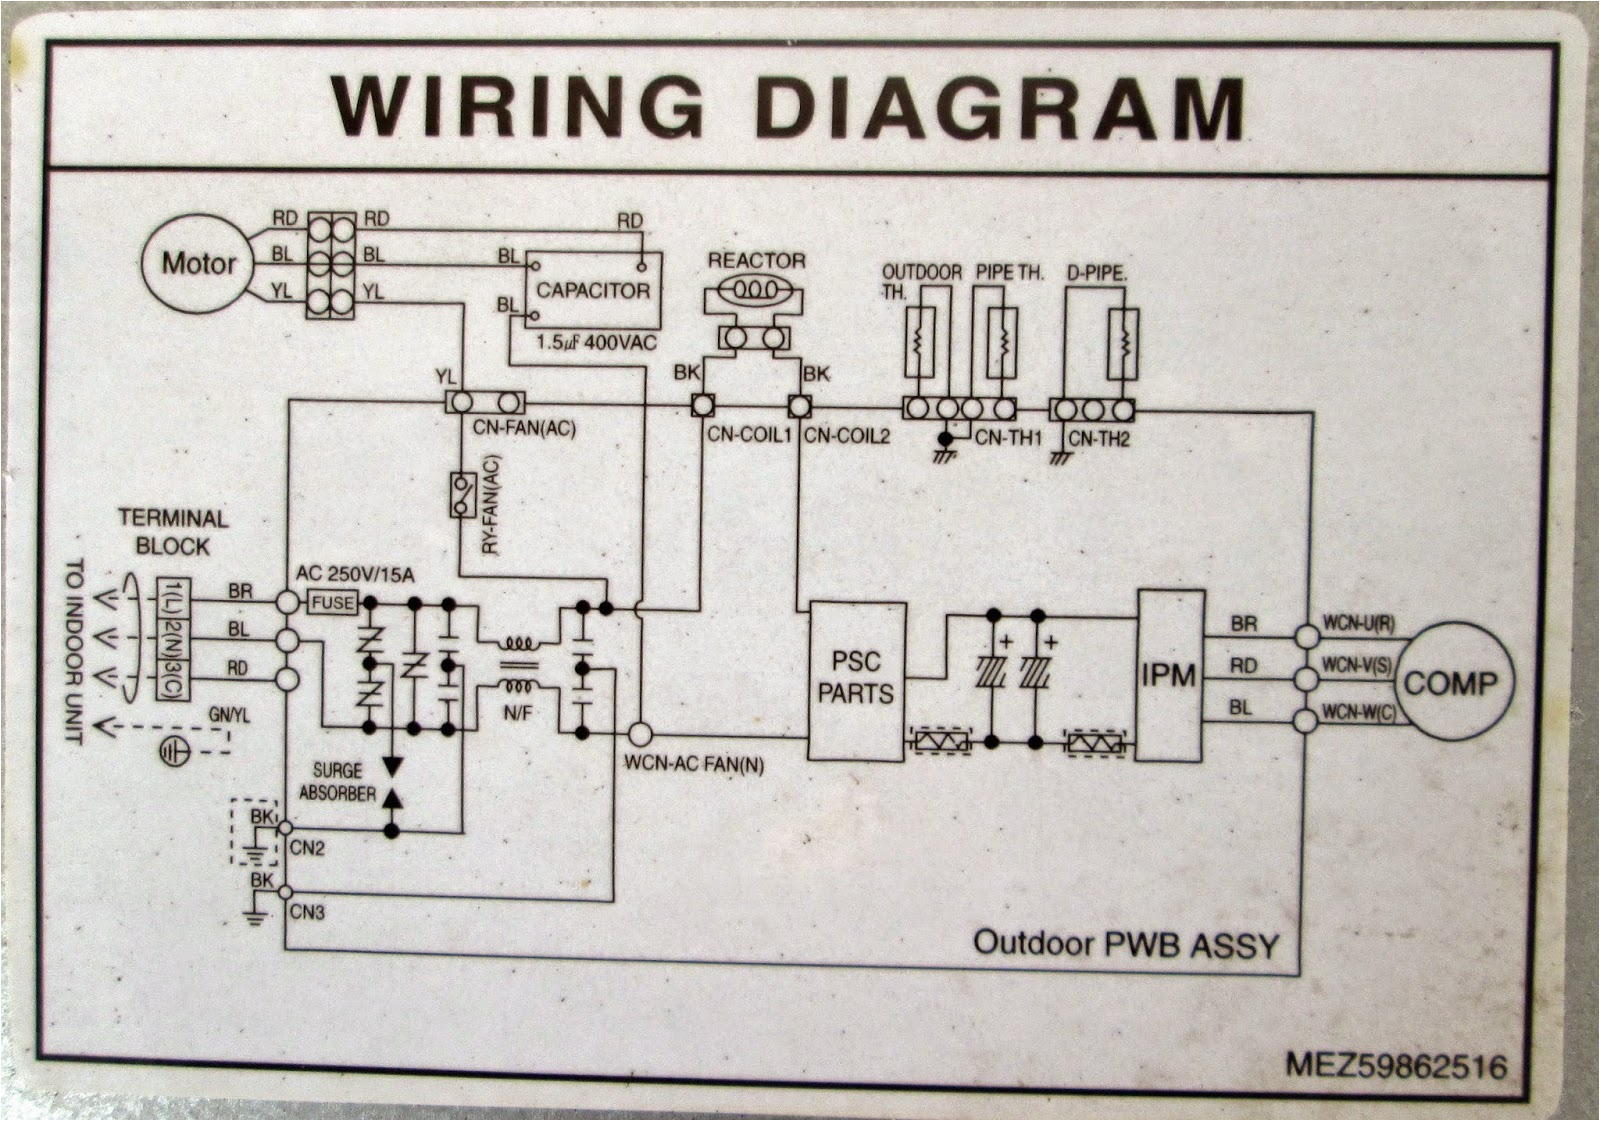 daikin wiring diagram basic electronics wiring diagram wiring diagram for mitsubishi air conditioner